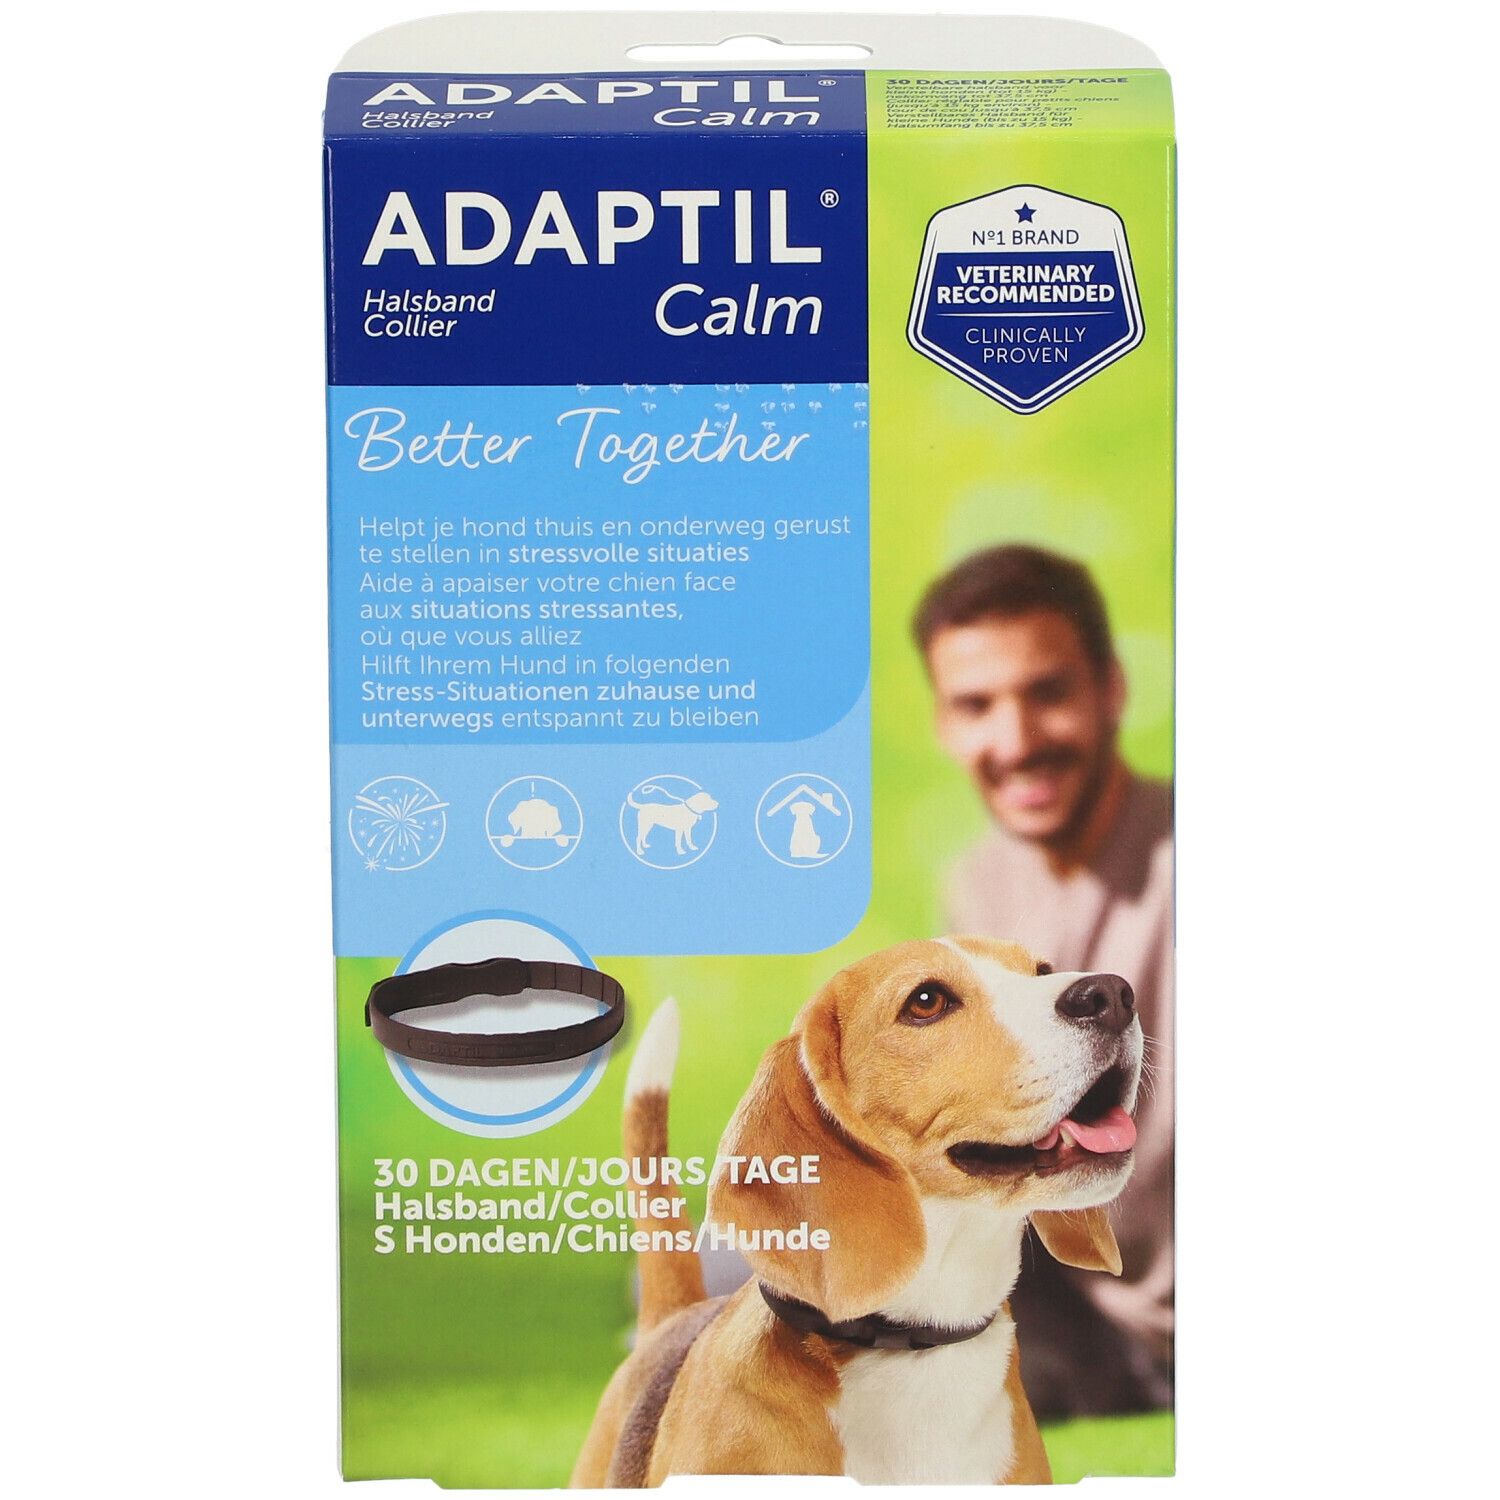 ADAPTIL® Calm On-the-go Collar